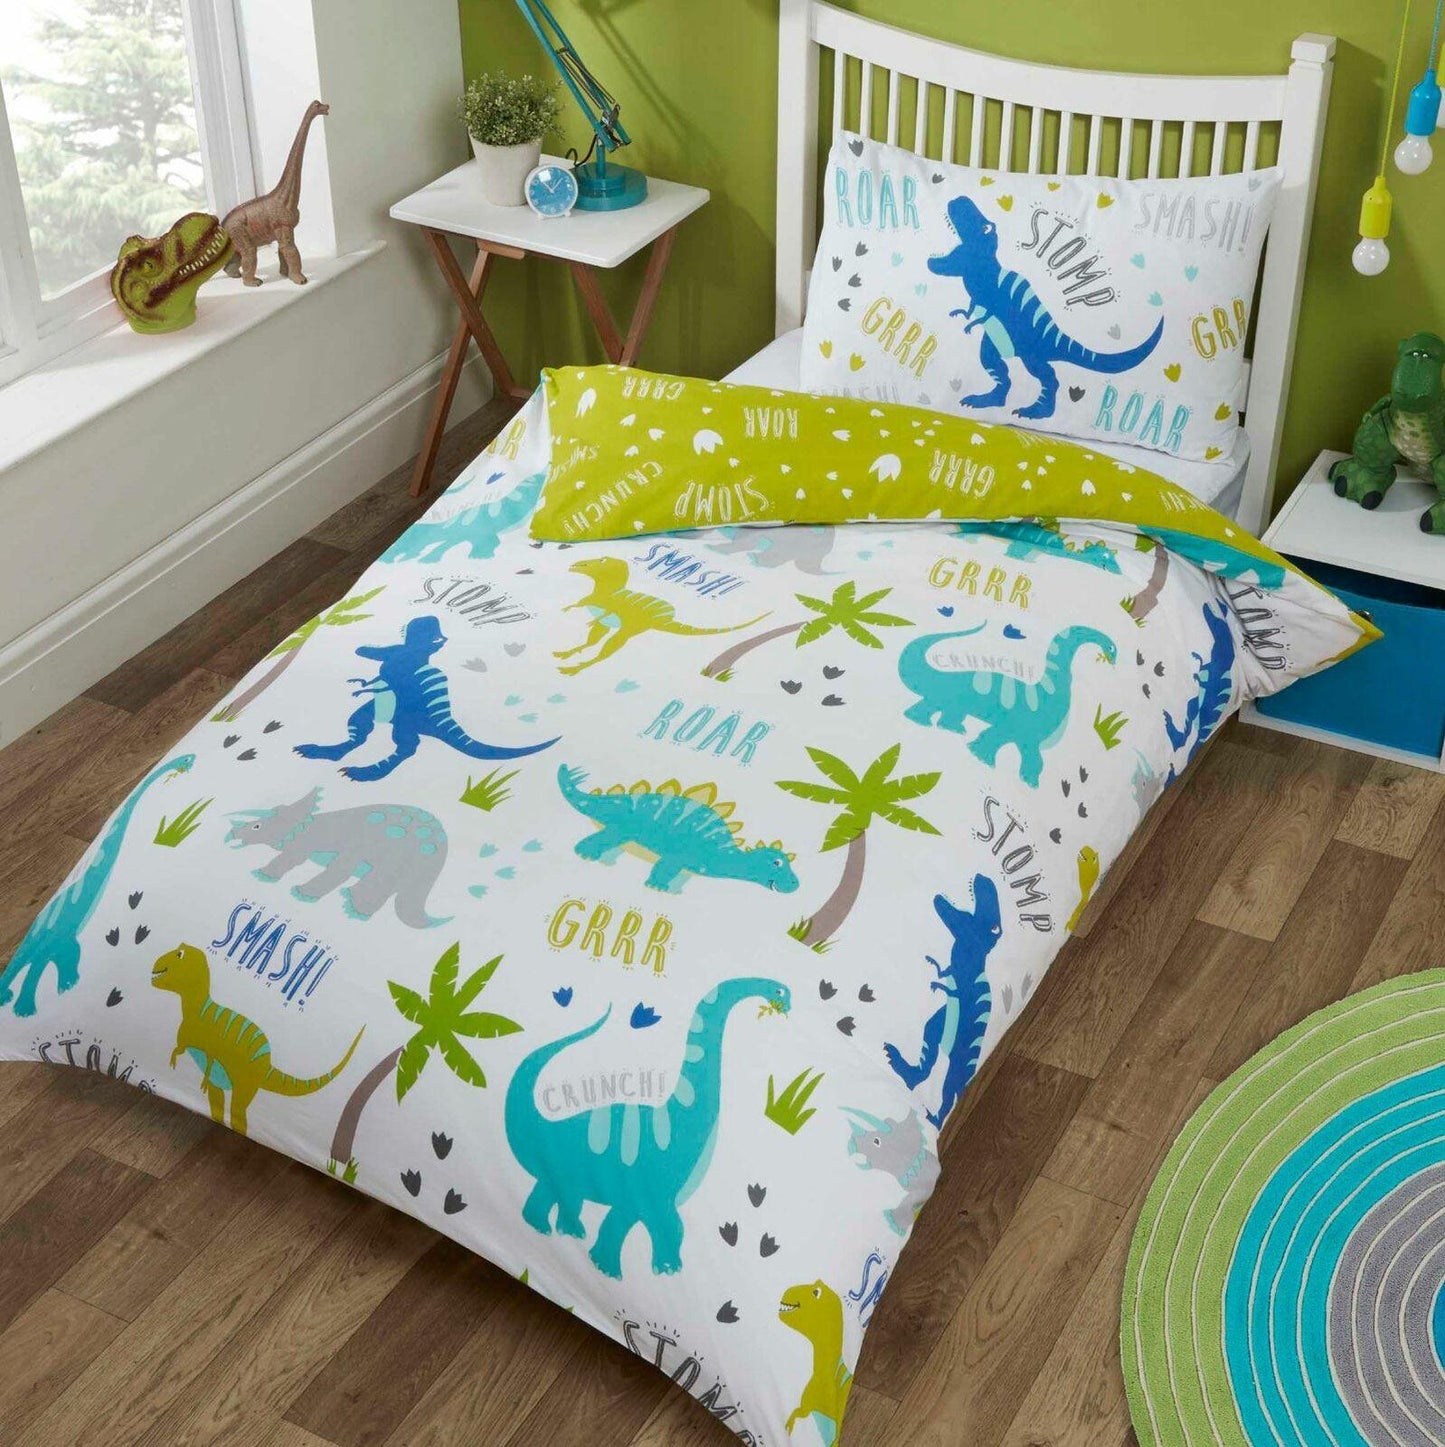 Roarsome Dinosaur Green Blue Duvet Cover Bedding Set Reversible - Home Inspired Gifts